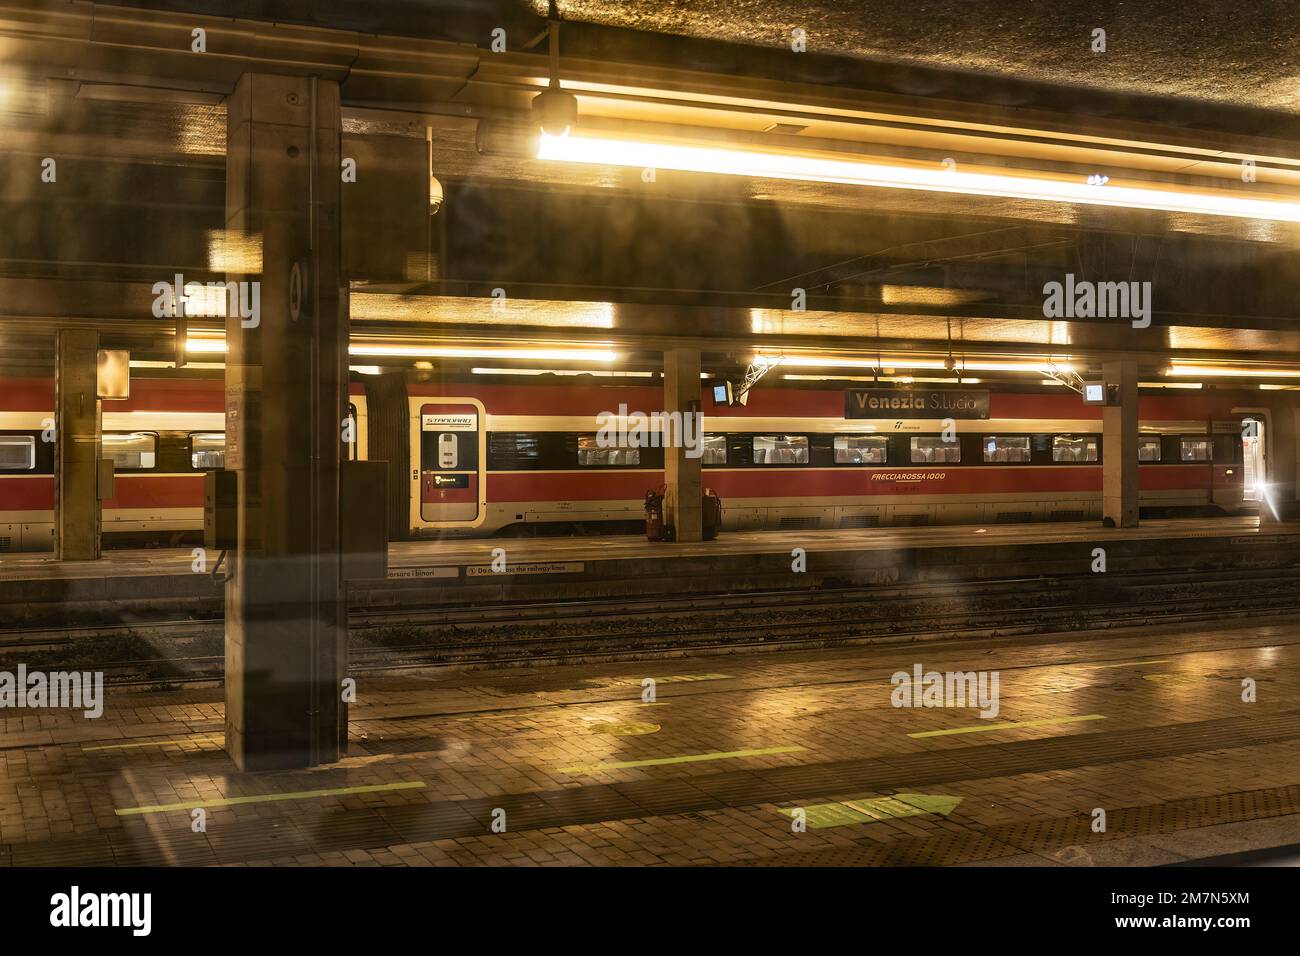 Venice, Italy 6 January 2023: Train in Railway station at night Stock Photo